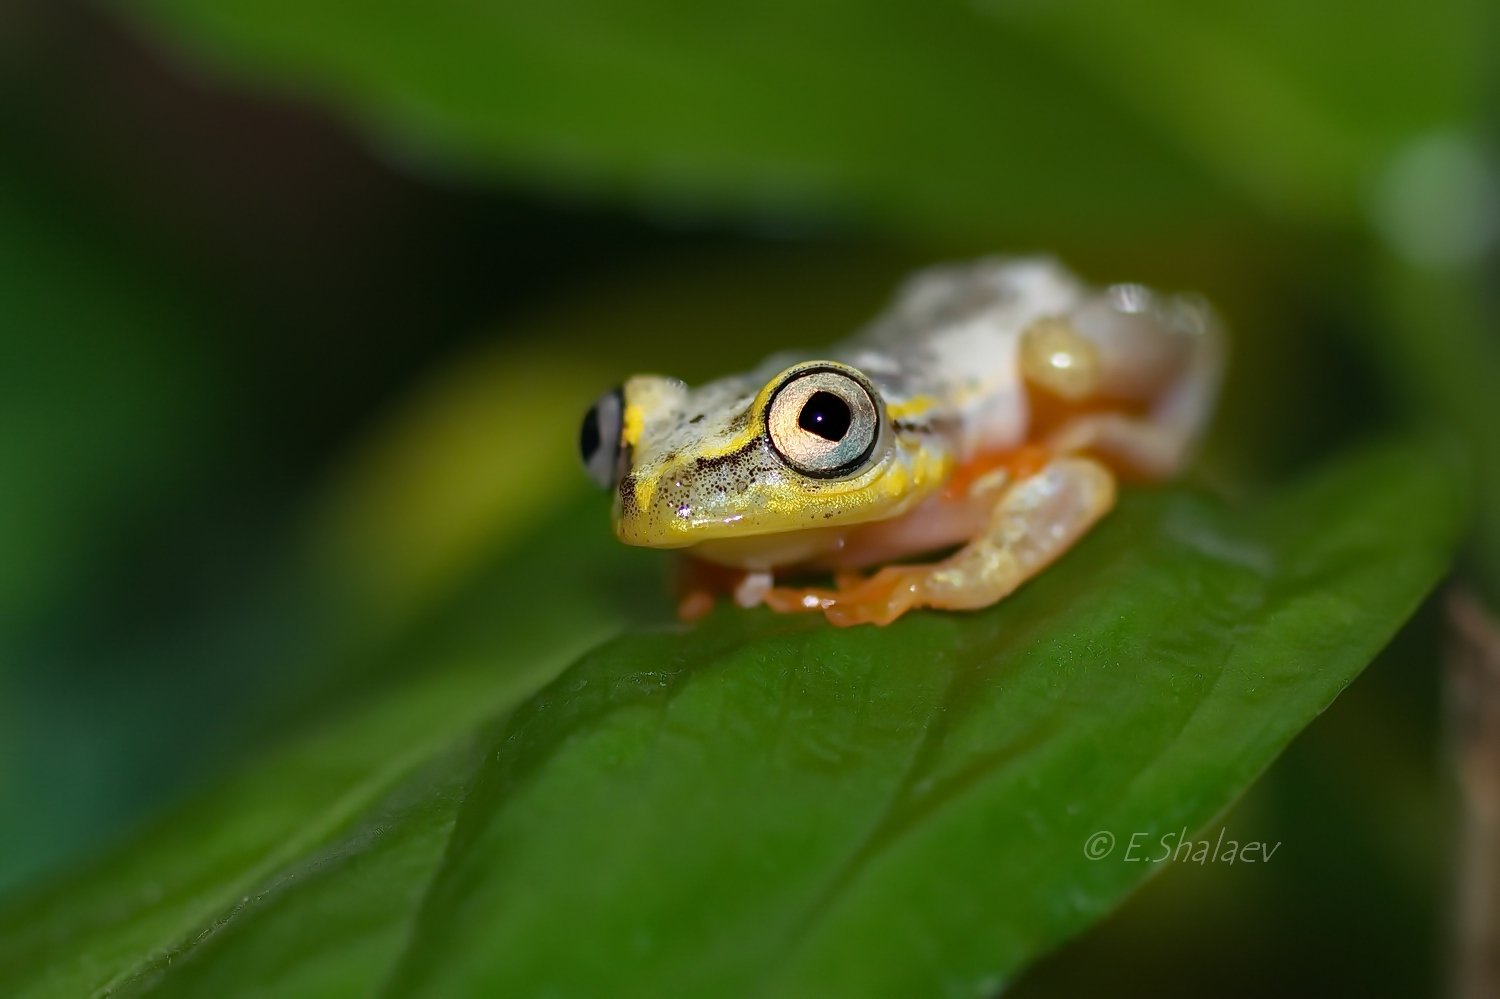 Frog, Heterixalus madagascariensis, Амфибии, Лягушка, Мадагаскарская прыгунья, Евгений